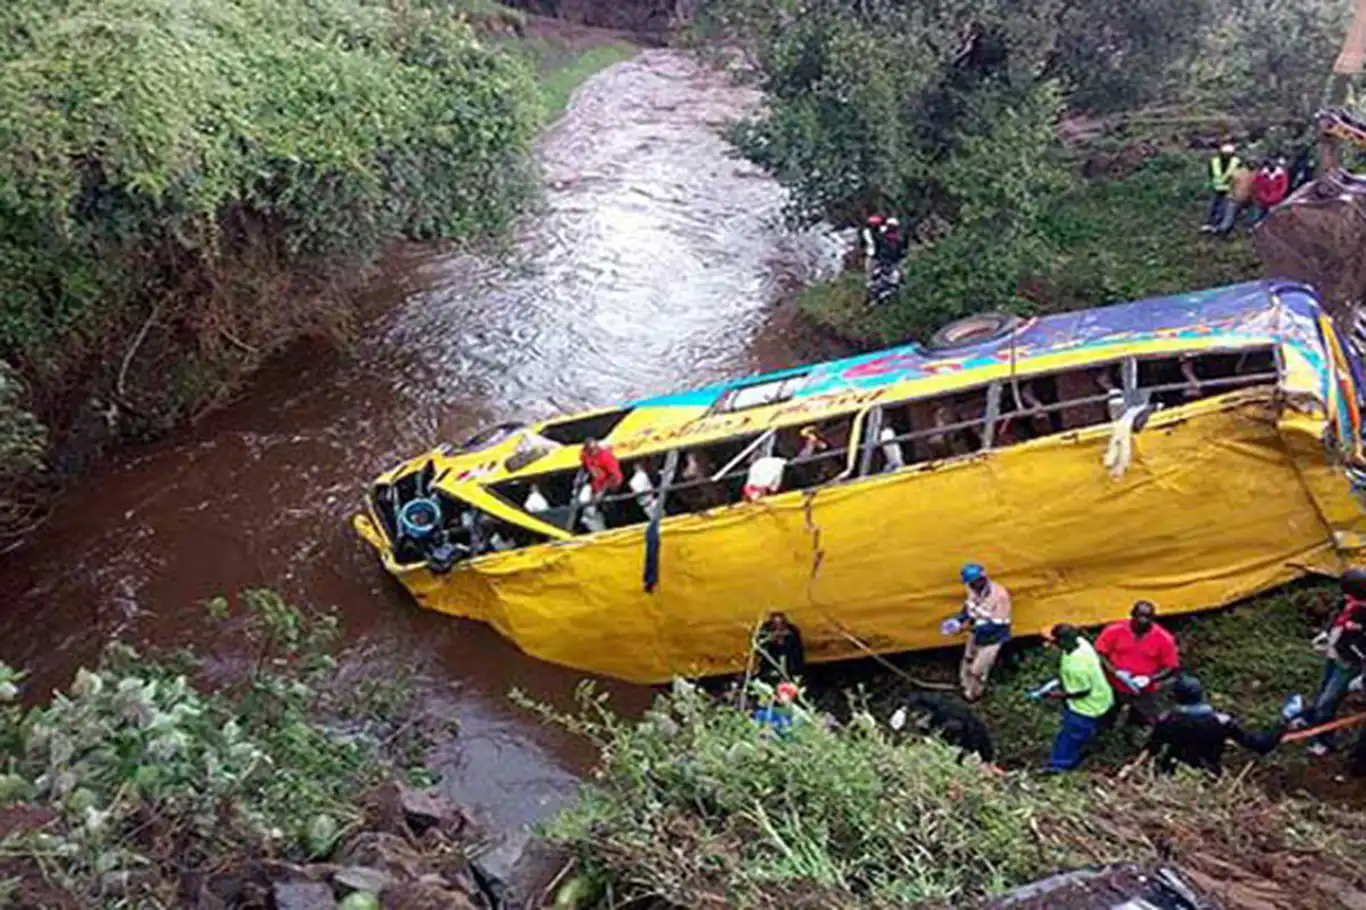 Yolcu otobüsü nehre uçtu: 9 ölü, 17 yaralı